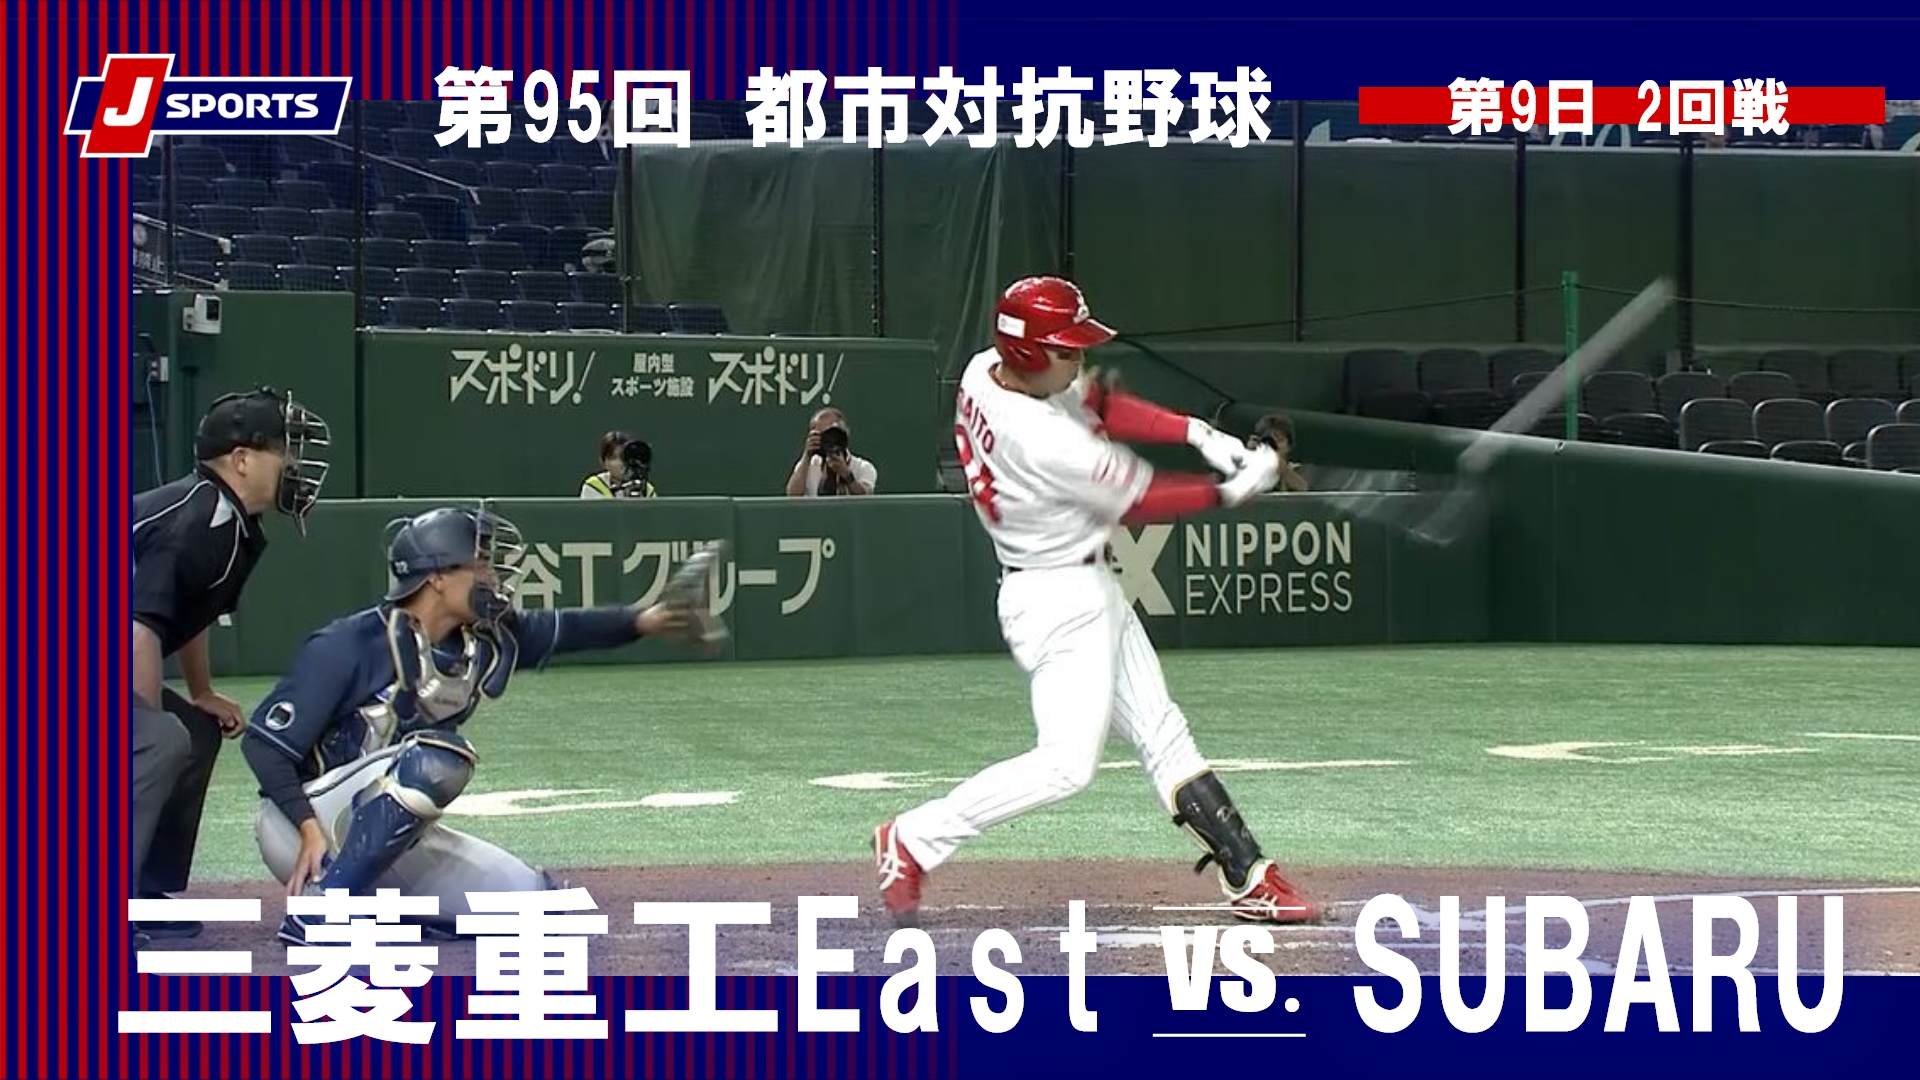 【ハイライト】三菱重工East vs. SUBARU｜第95回 都市対抗野球大会 第9日 2回戦  #toshitaikou